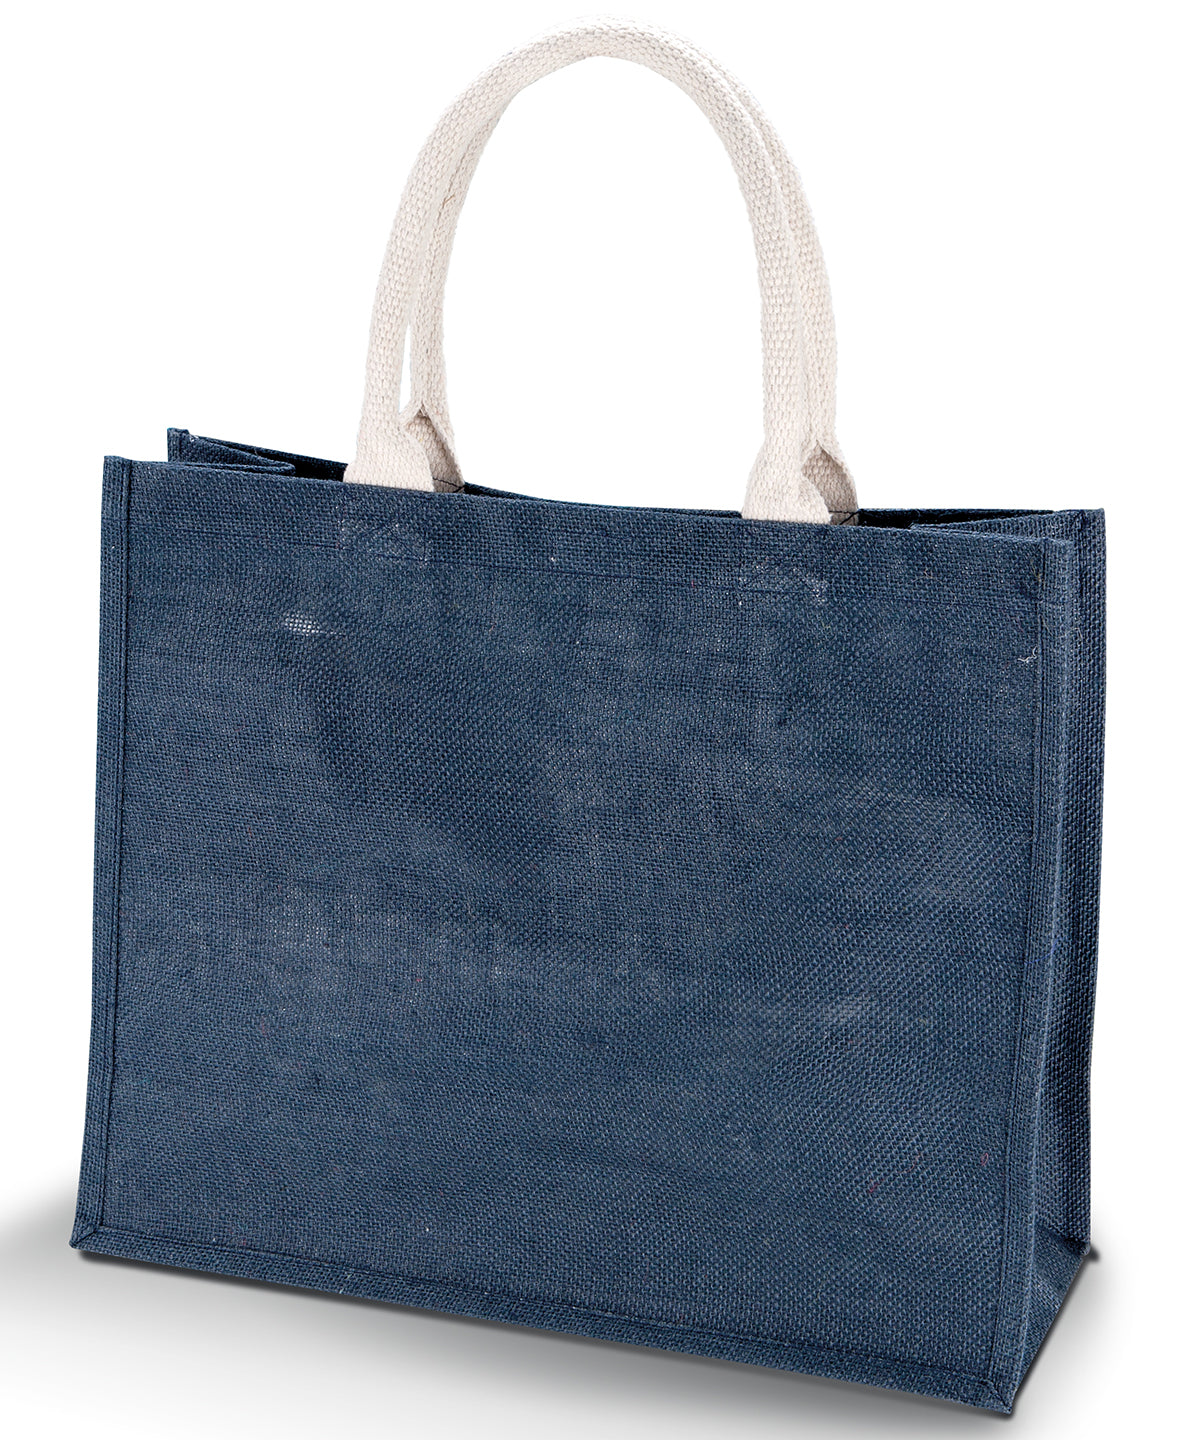 Personalised Bags - Navy KiMood Jute beach bag